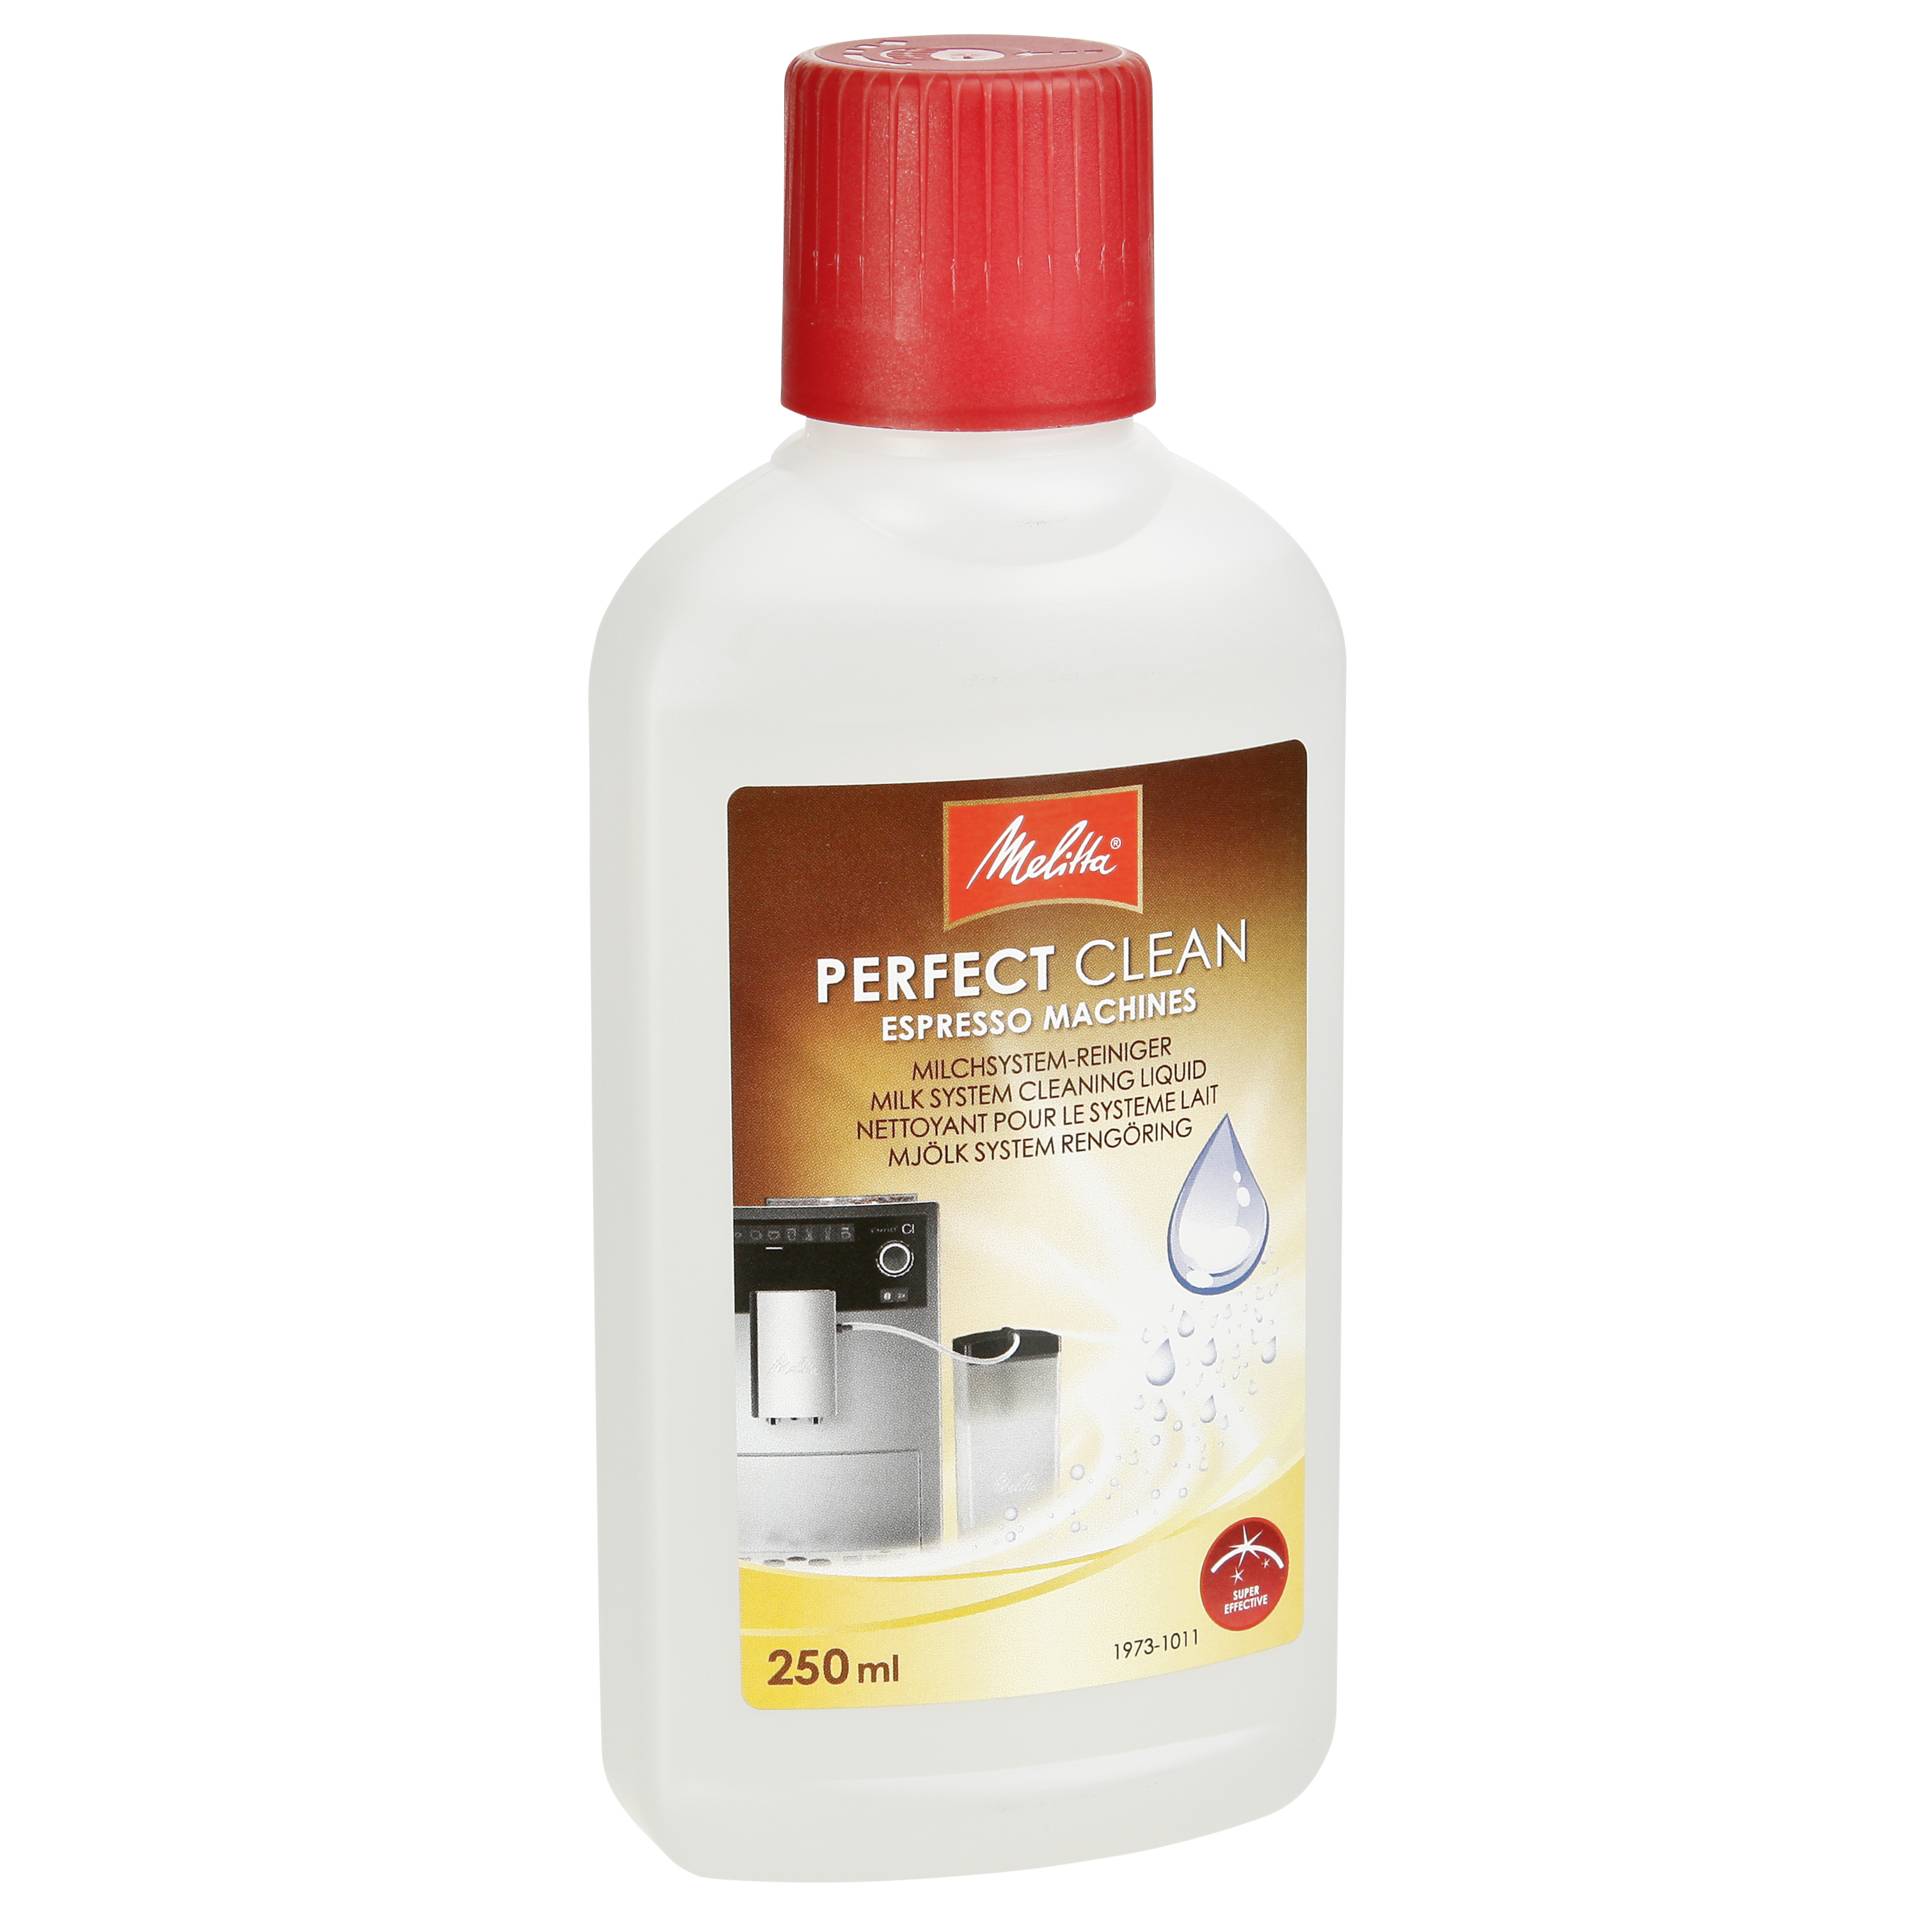 Melitta Perfect Clean Milchsystem-Reiniger 250ml